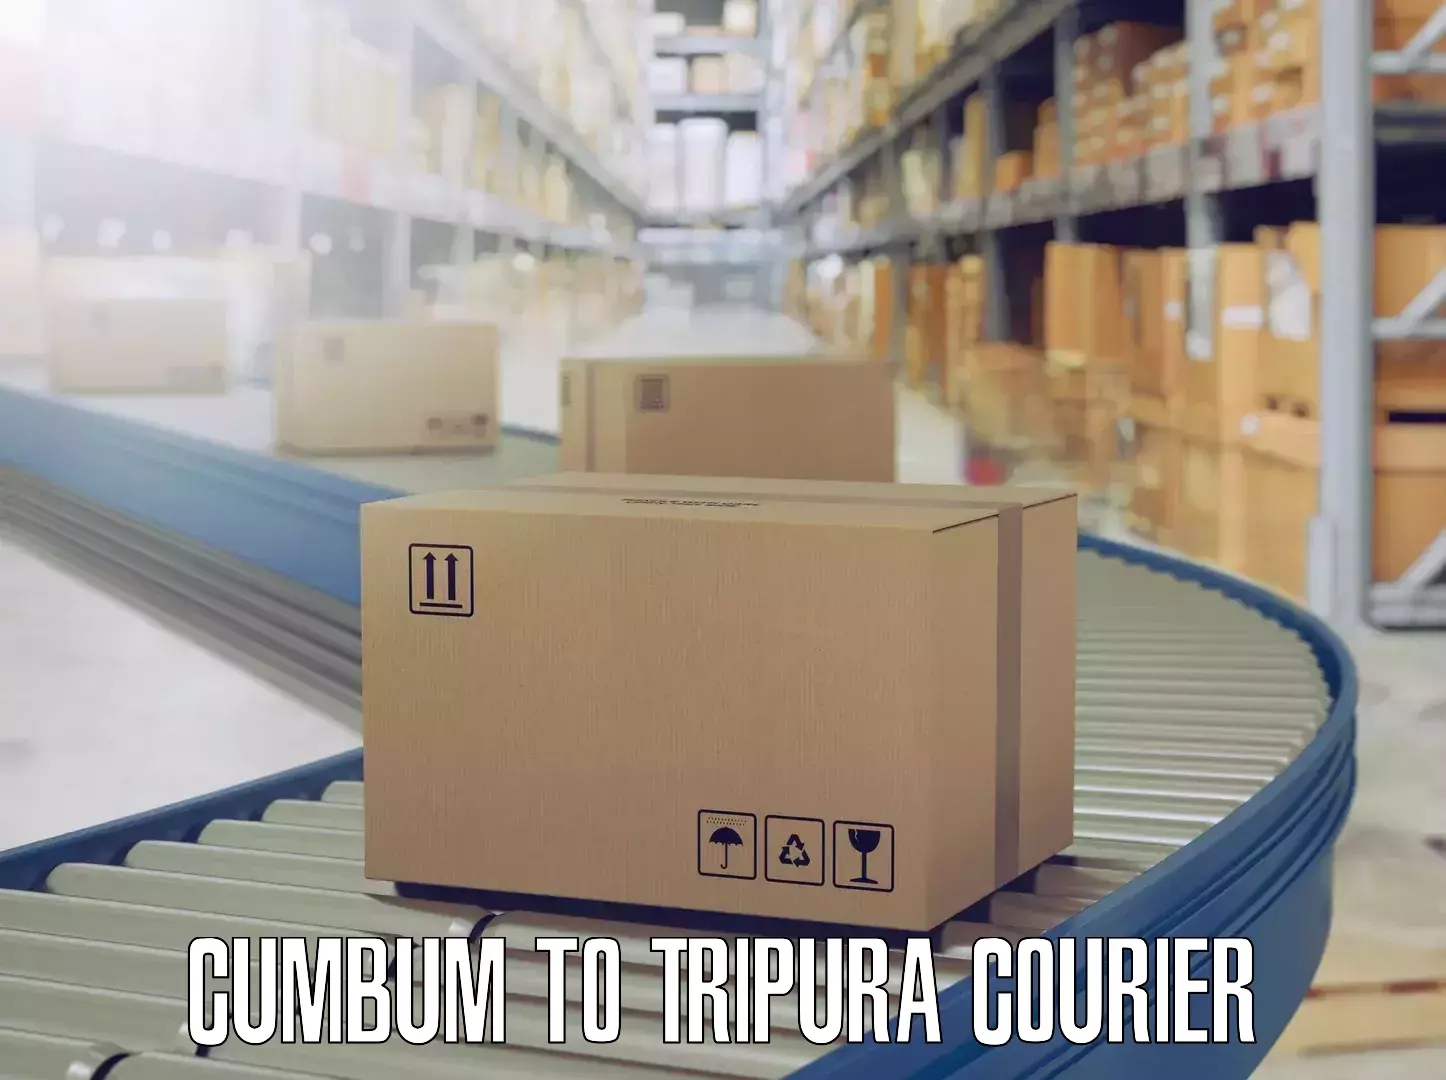 Skilled furniture transporters Cumbum to Tripura